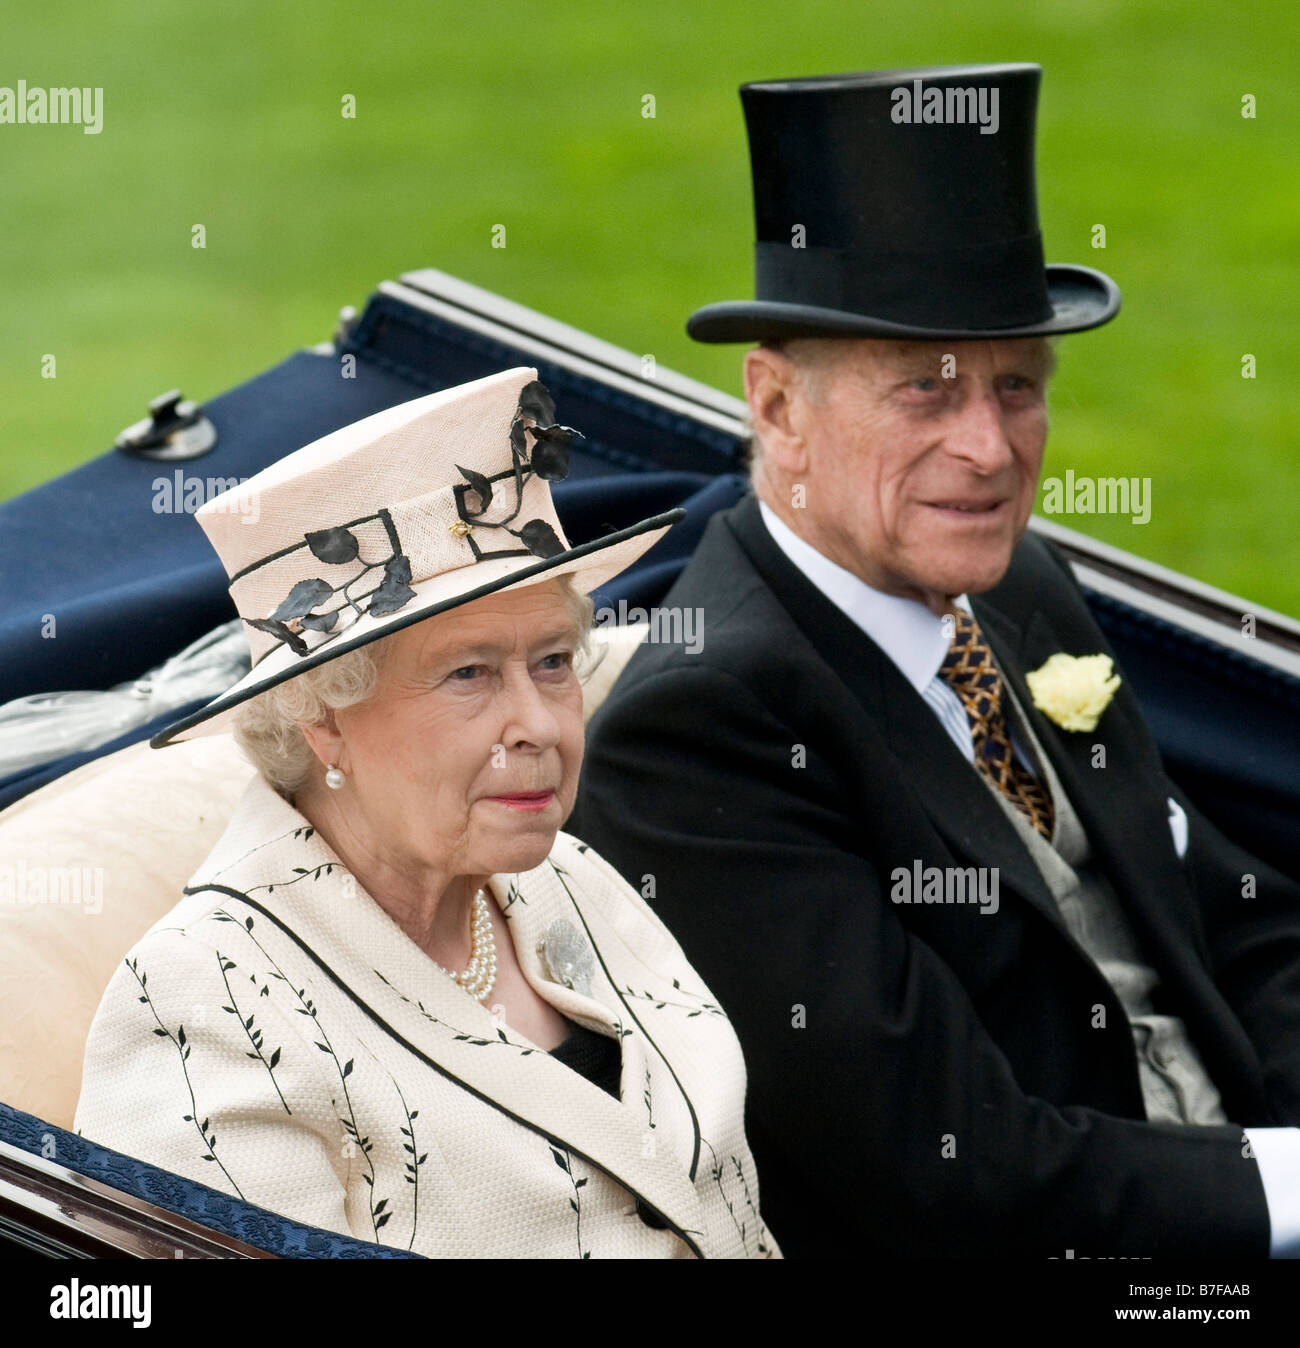 Su Majestad la Reina y el Duque de Edimburgo llegan en un carro abierto en el Royal Ascot 2008, Inglaterra Foto de stock